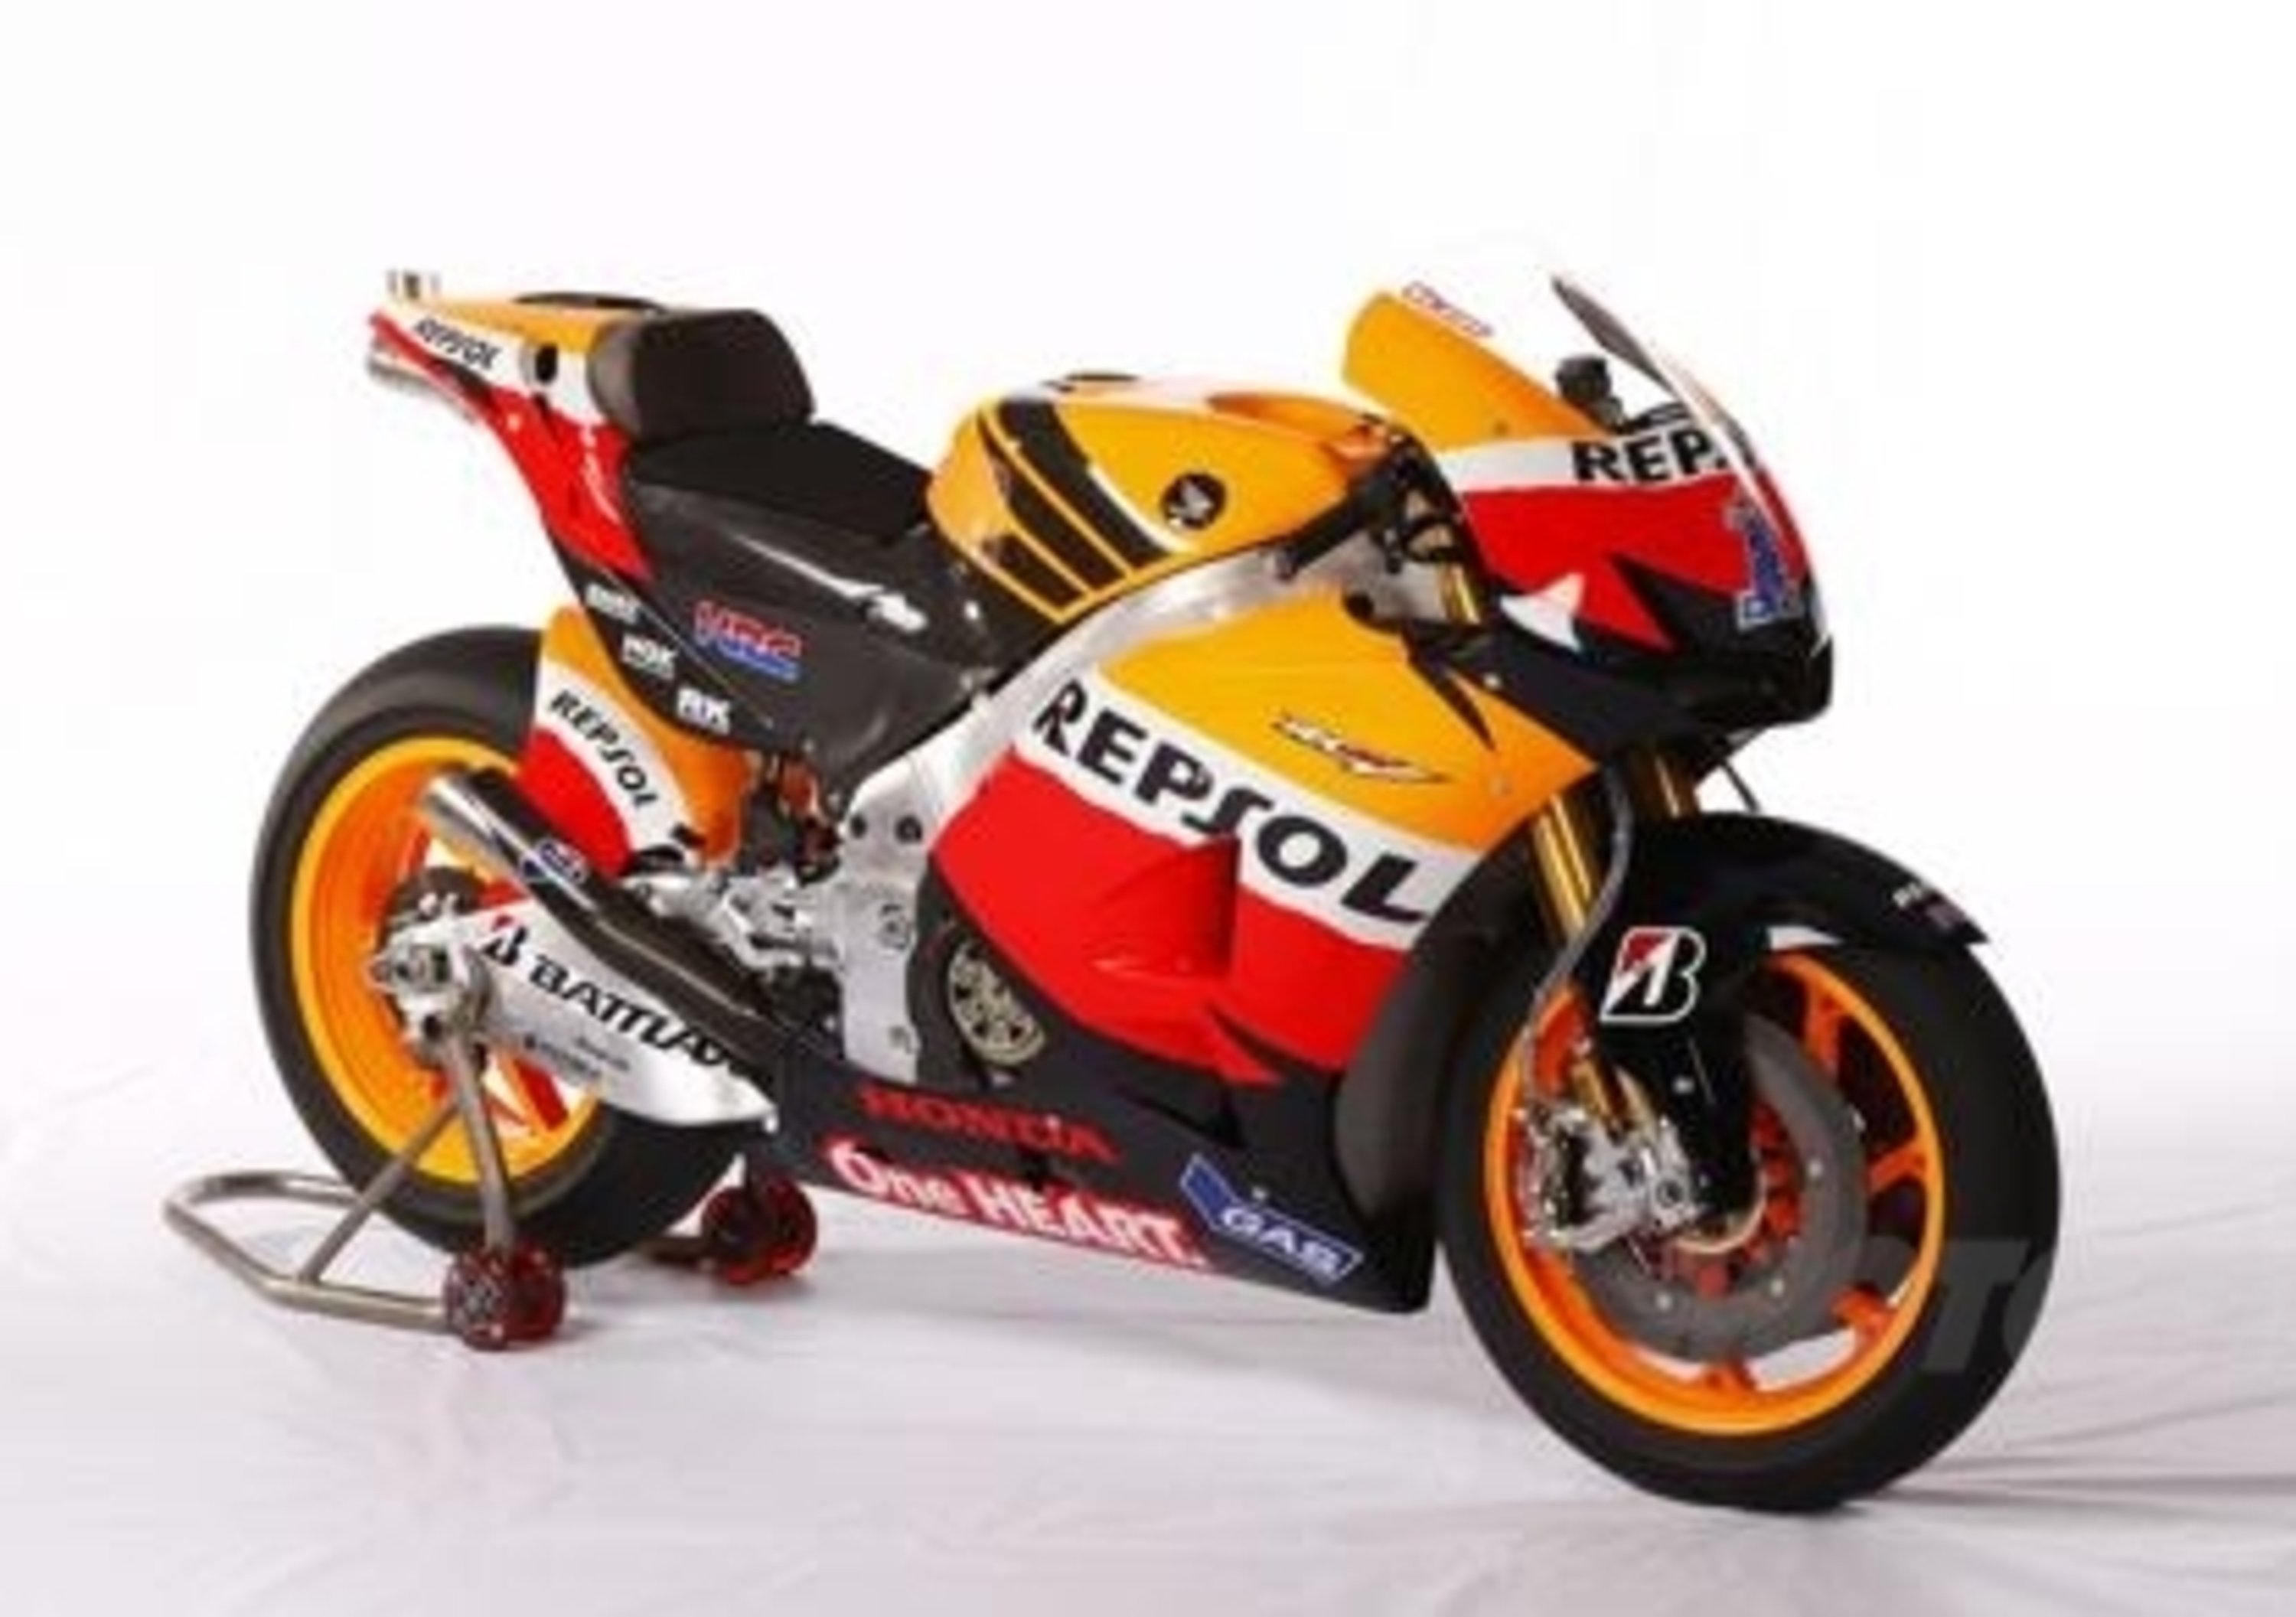 Honda: in arrivo una sportiva su base MotoGP! Sar&agrave; l&rsquo;erede della mitica RC30